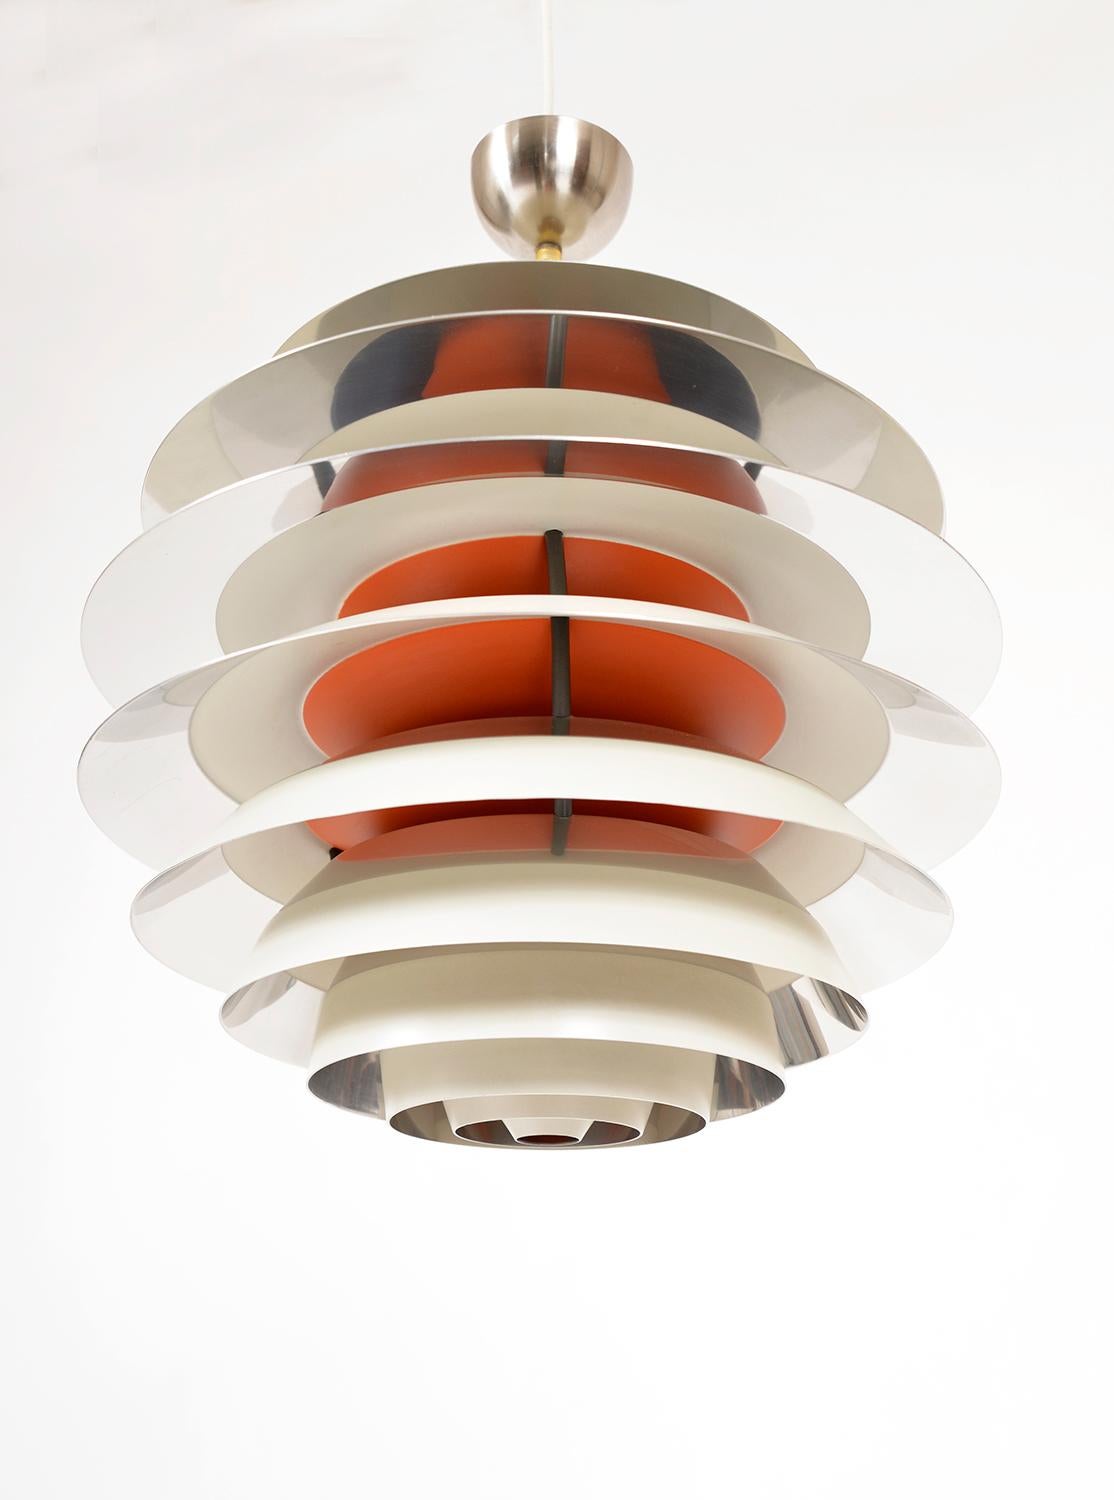 Brushed 1960s Louis Poulsen PH Kontrast Pendant Lamp by Poul Henningsen Denmark For Sale